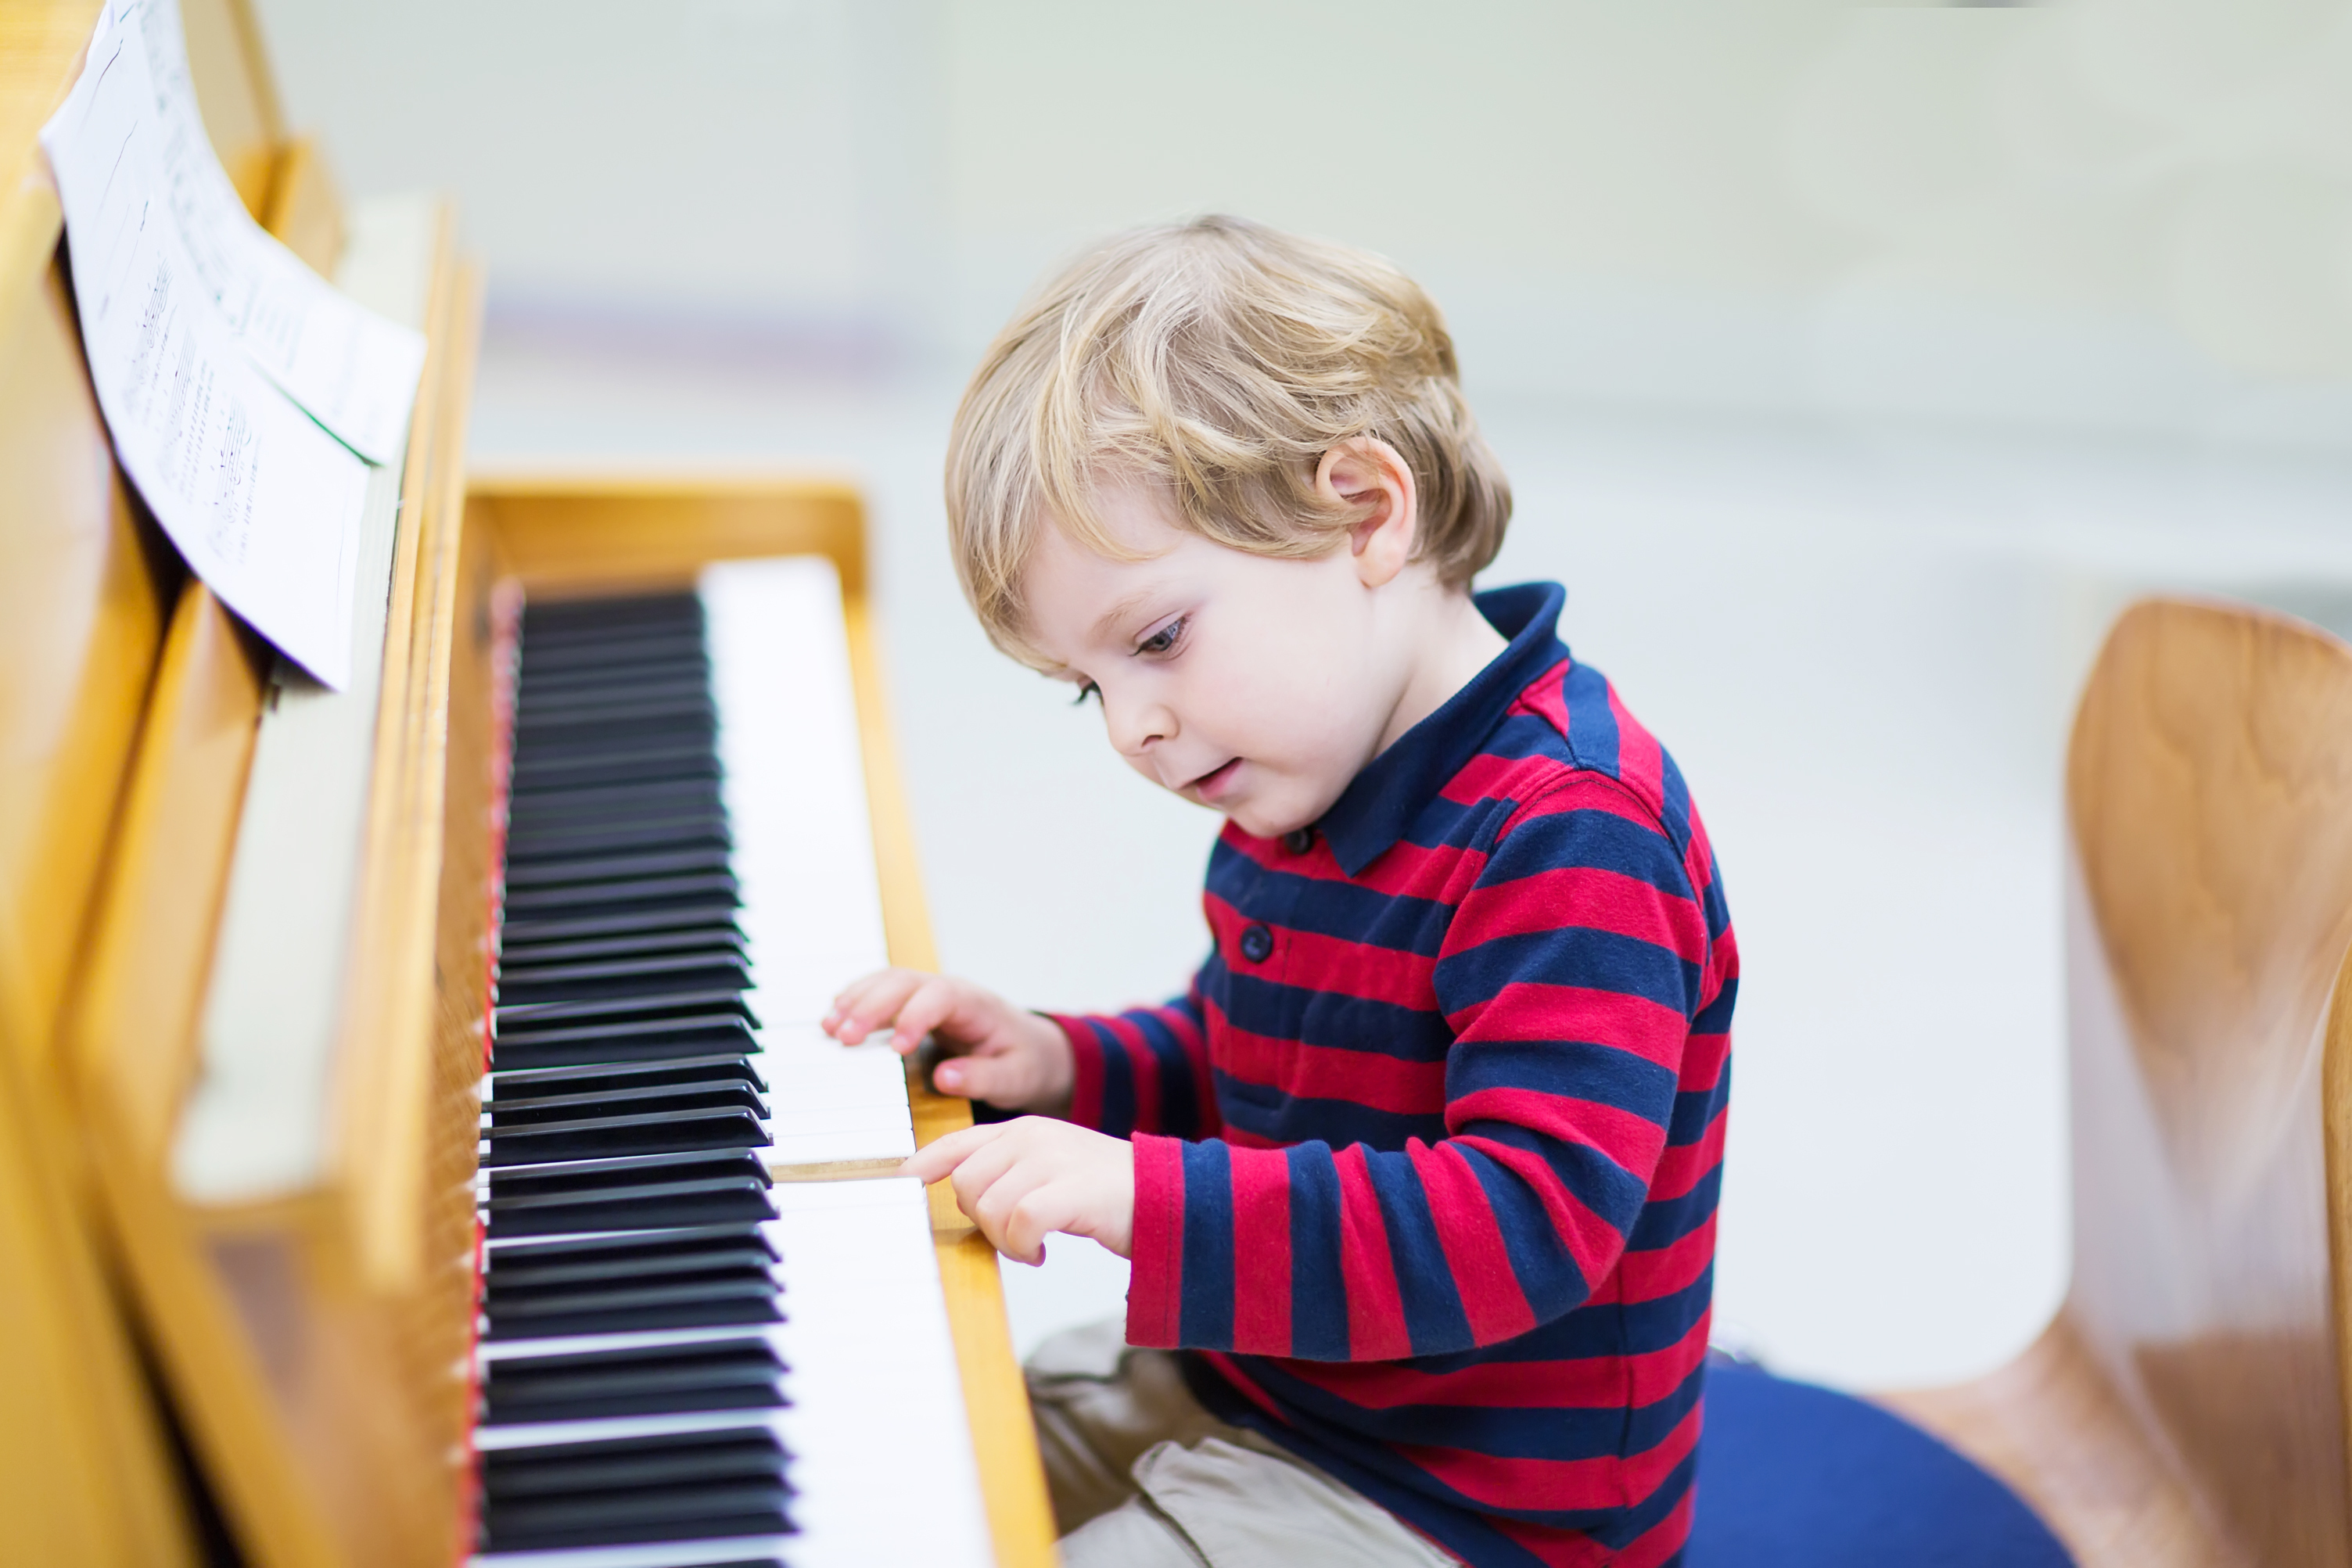 He can play piano. Фортепиано для детей. Музыкальные инструменты для детей. Дети играющие на музыкальных инструментах. Талантливые дети.